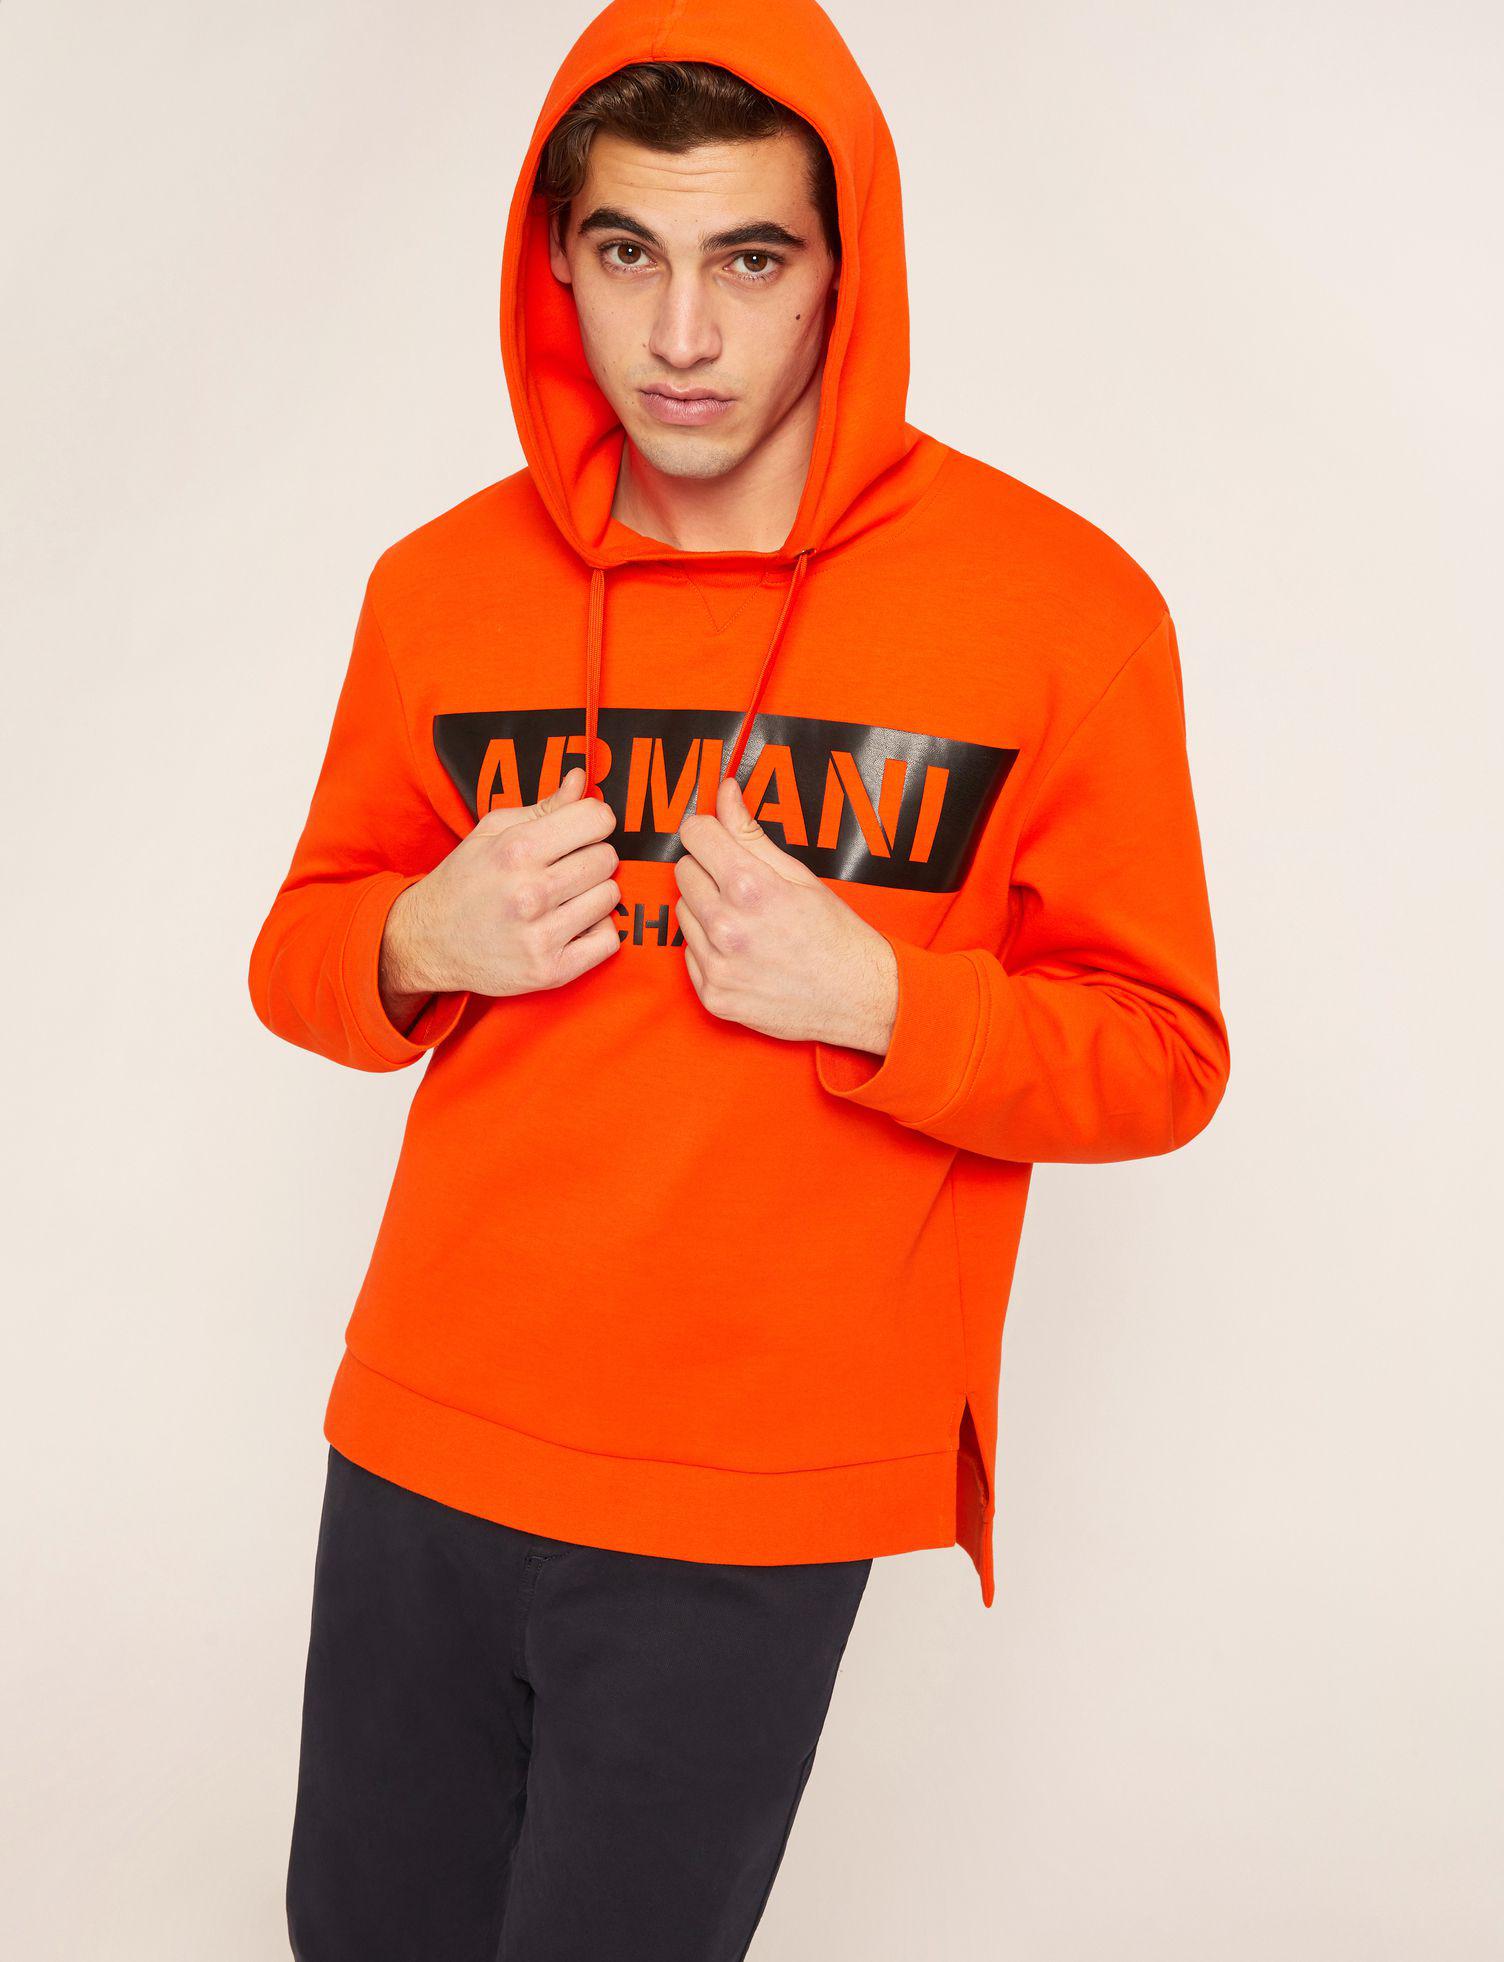 armani orange hoodie